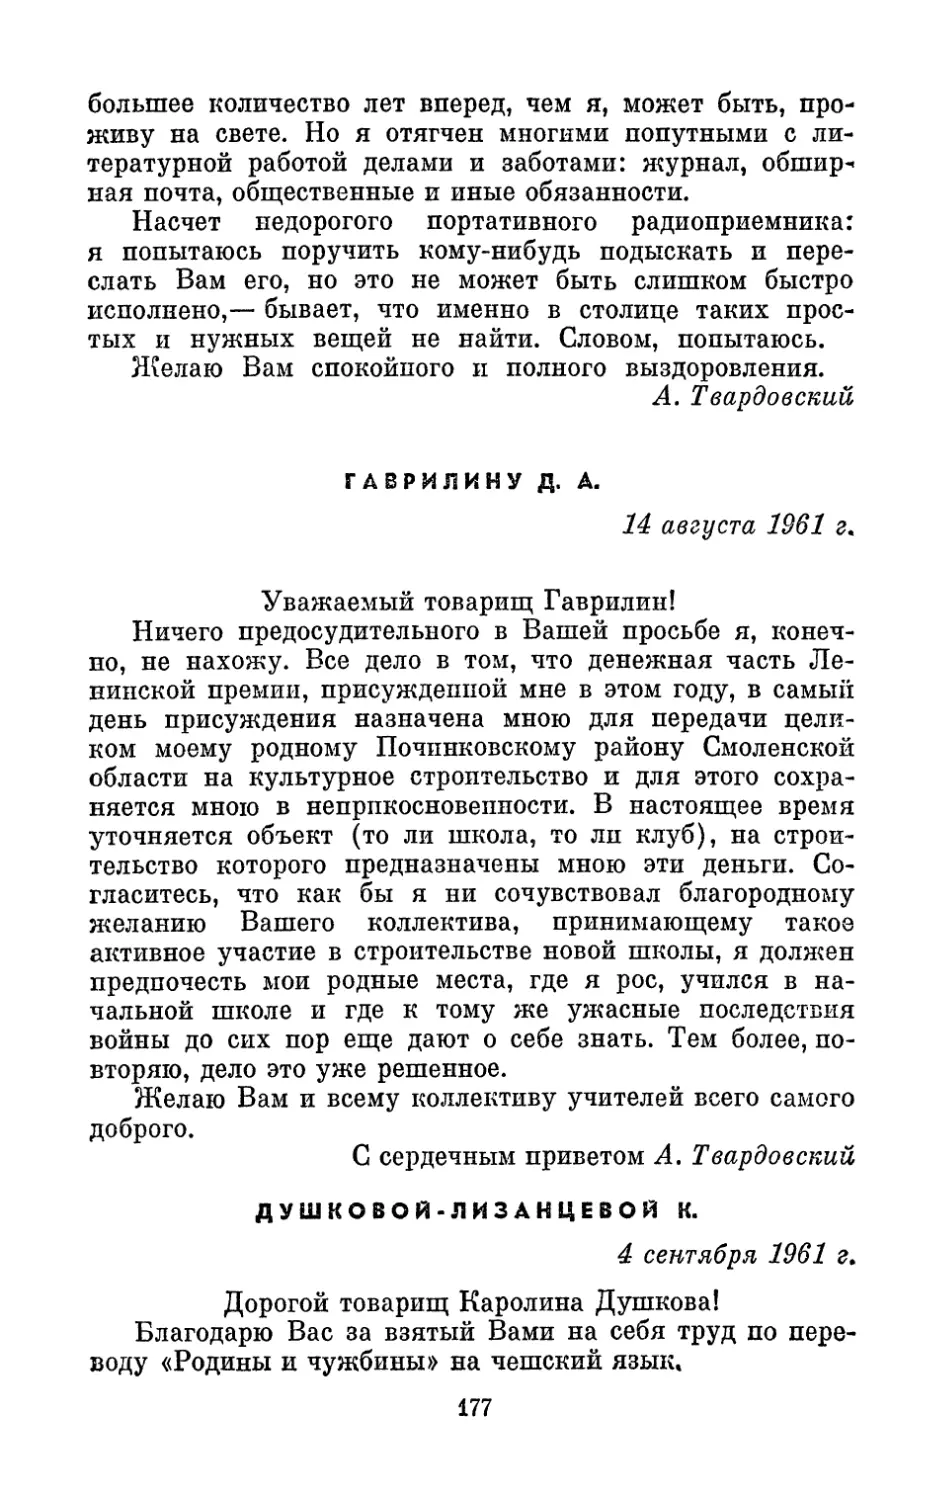 Гаврилину, 14 августа 1961 г.
Душковой-Лизанцевой К., 4 сентября 1961 г.